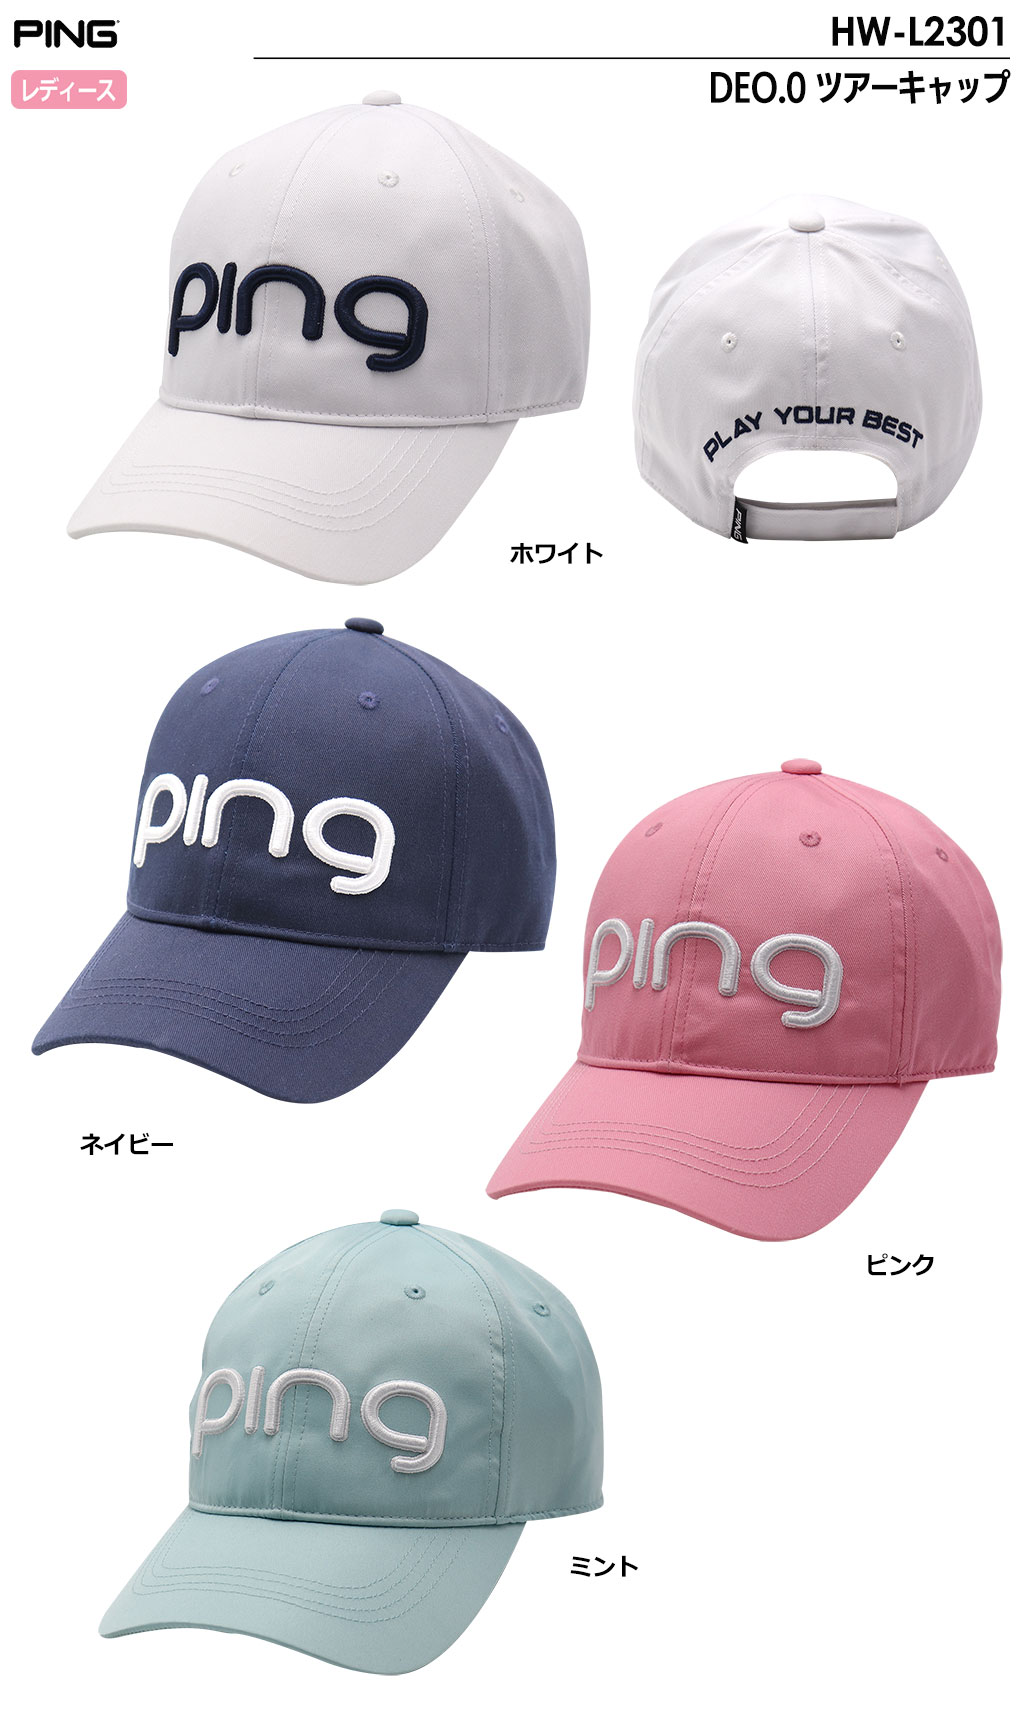 ピン HW-L2301 DEO.0 ツアーキャップ レディース 帽子 PING 2023春夏モデル 日本正規品